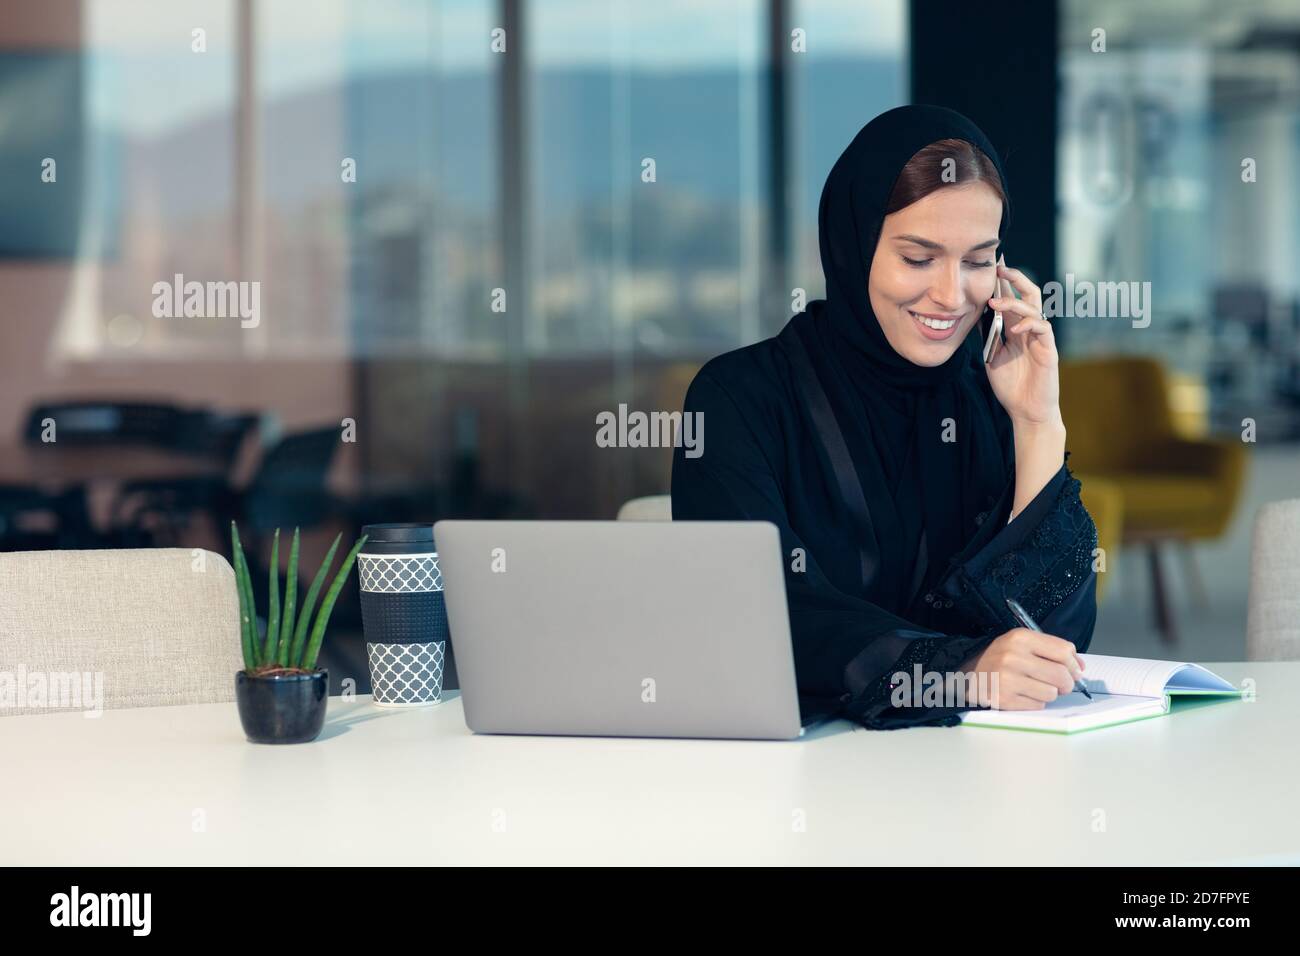 Glückliche muslimische Geschäftsfrau in Hijab am Büroarbeitsplatz. Lächelnde arabische Frau, die am Laptop arbeitet und mit dem Smartphone spricht Stockfoto